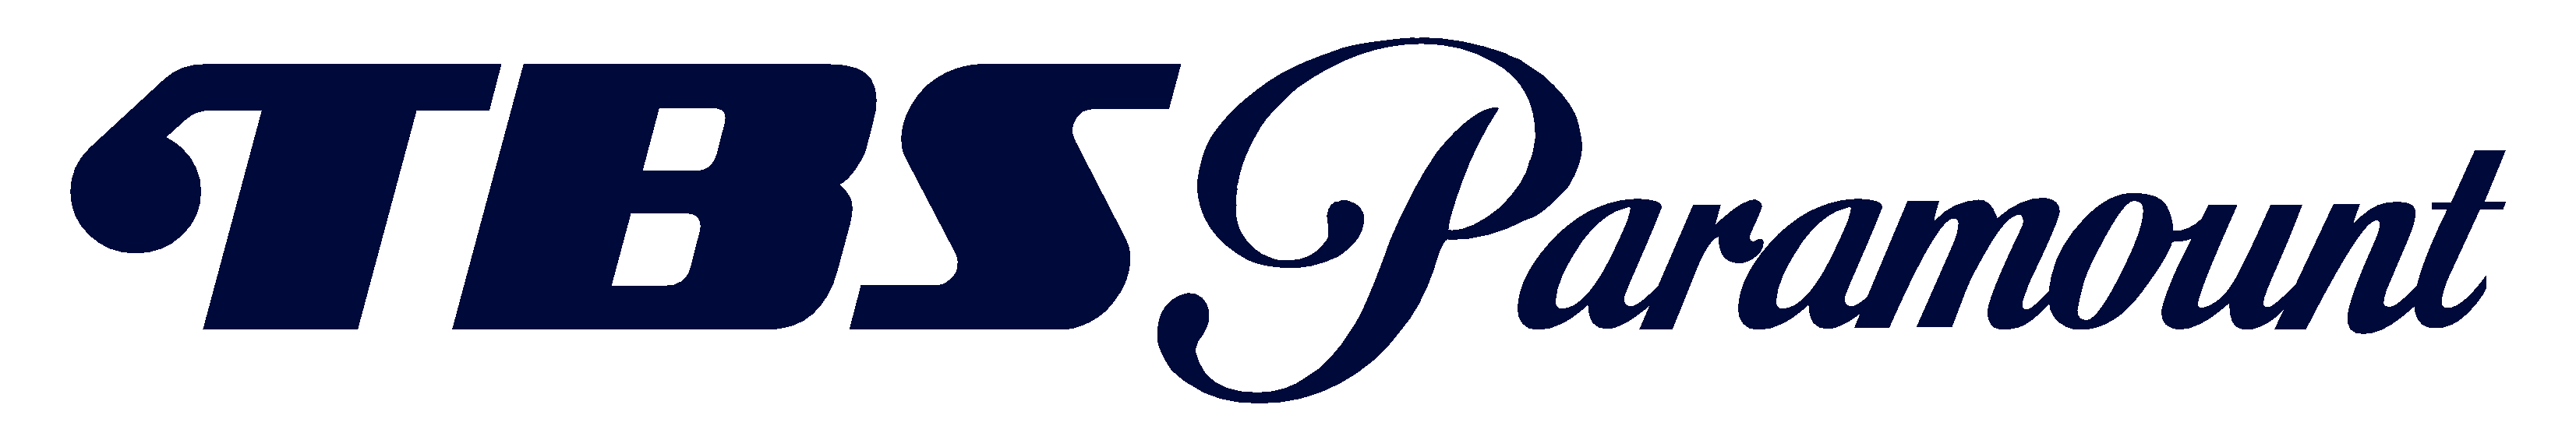 TBS-Paramount logo.png